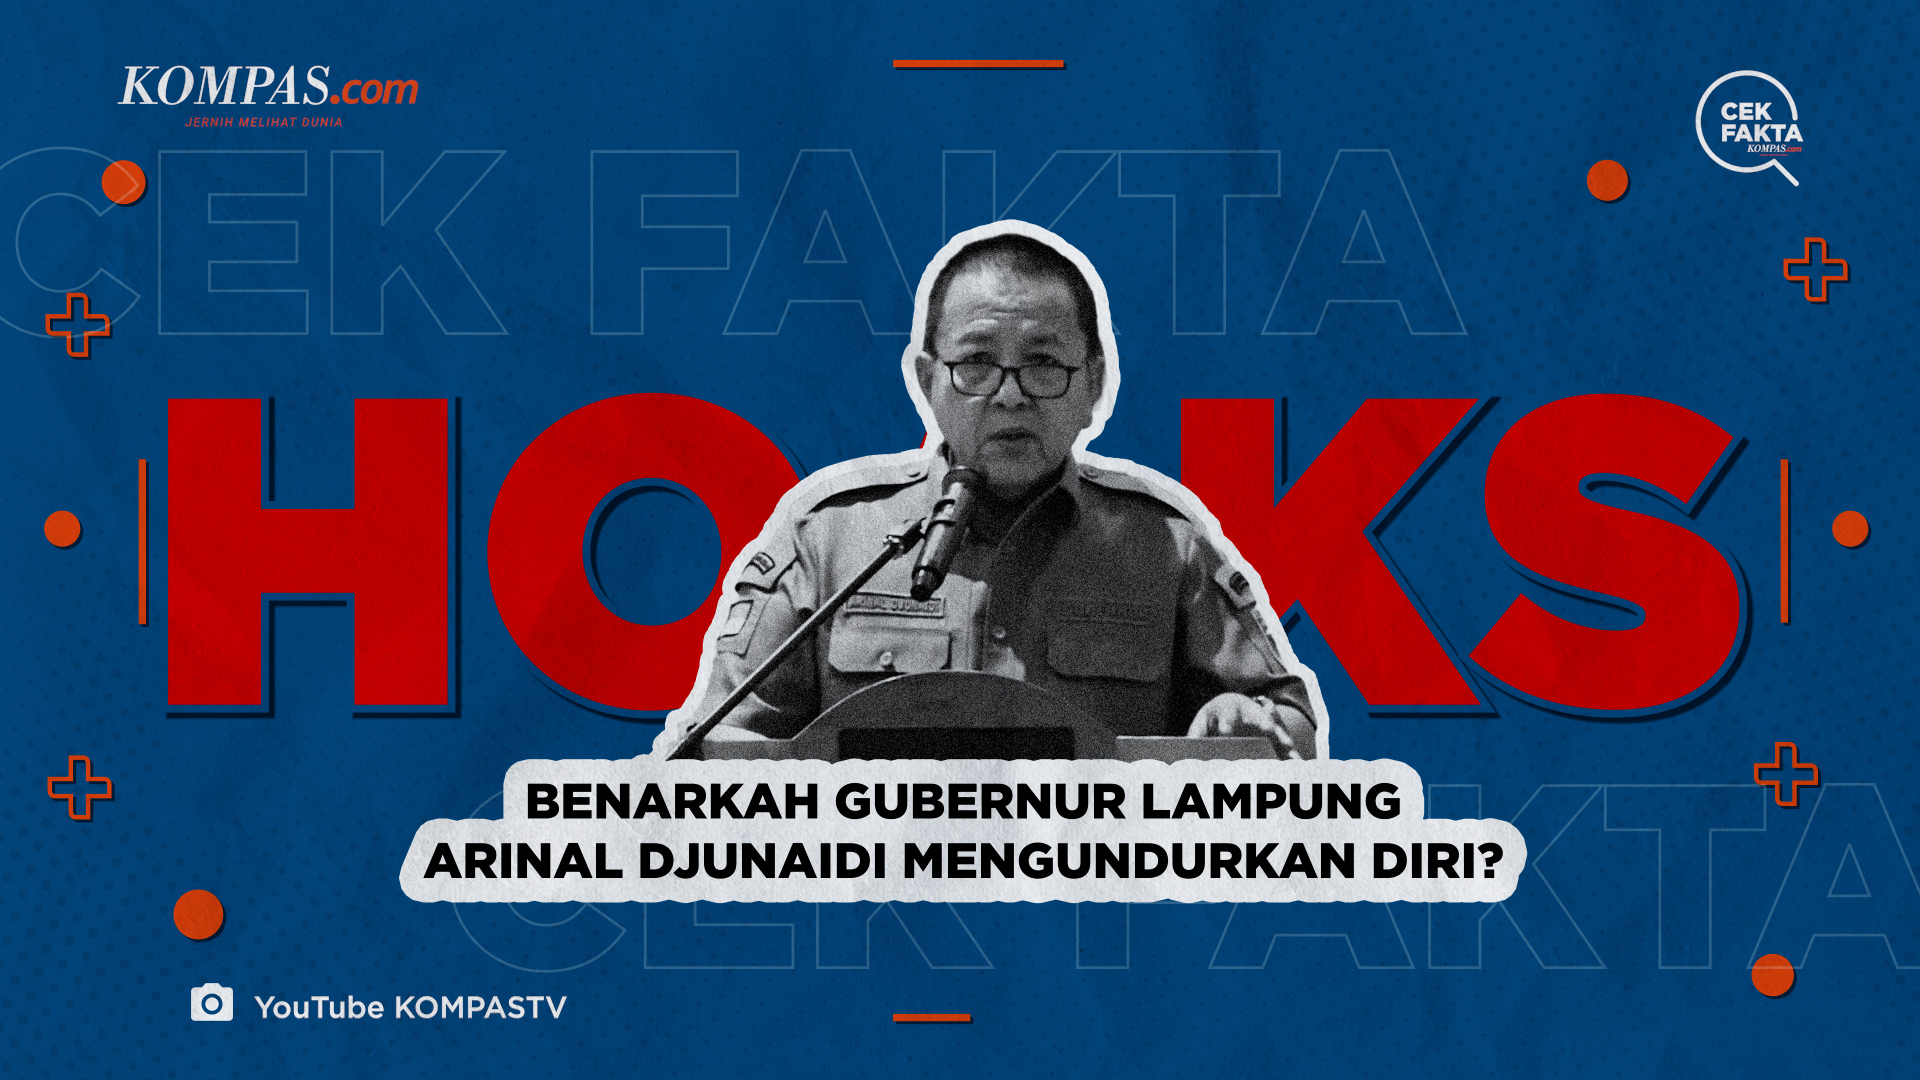 Benarkah Gubernur Lampung Arinal Djunaidi Mengundurkan Diri?